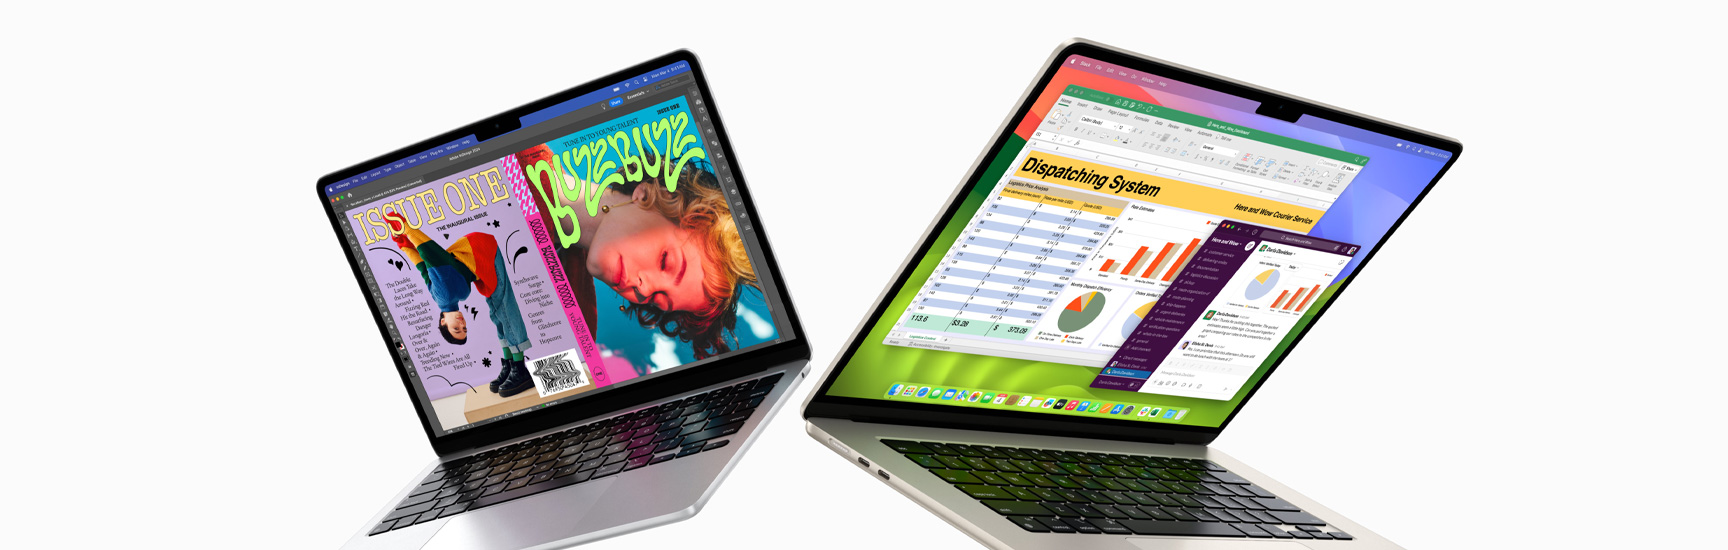 Pootevřený 13palcový MacBook Air nalevo a 15palcový MacBook Air napravo. Na obrazovce 13palcového modelu je zobrazená pestrobarevná obálka magazínu vytvořená v InDesignu. Na 15palcovém modelu jsou okna Microsoft Excelu a Slacku.